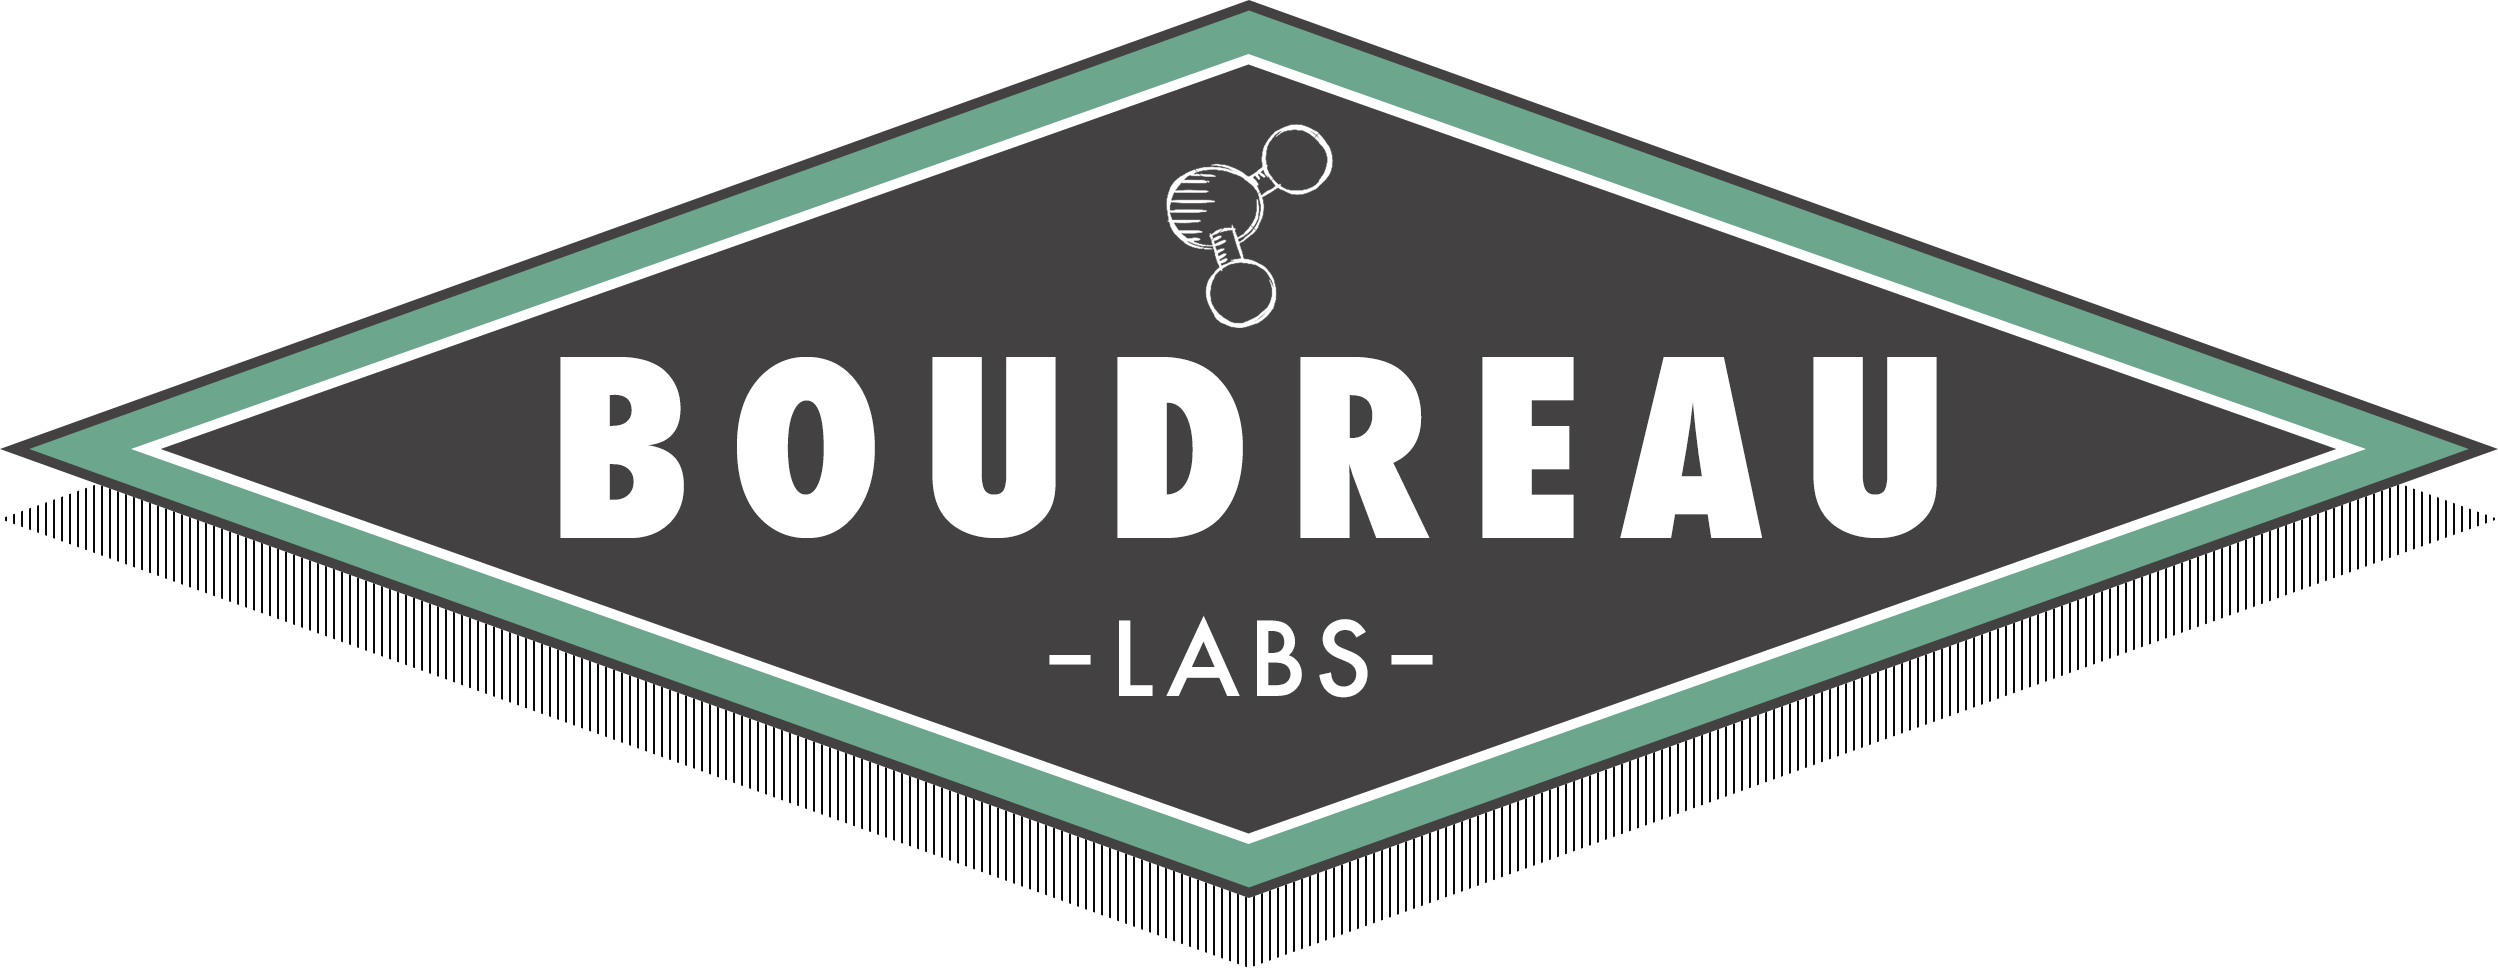 Boudreau Labs